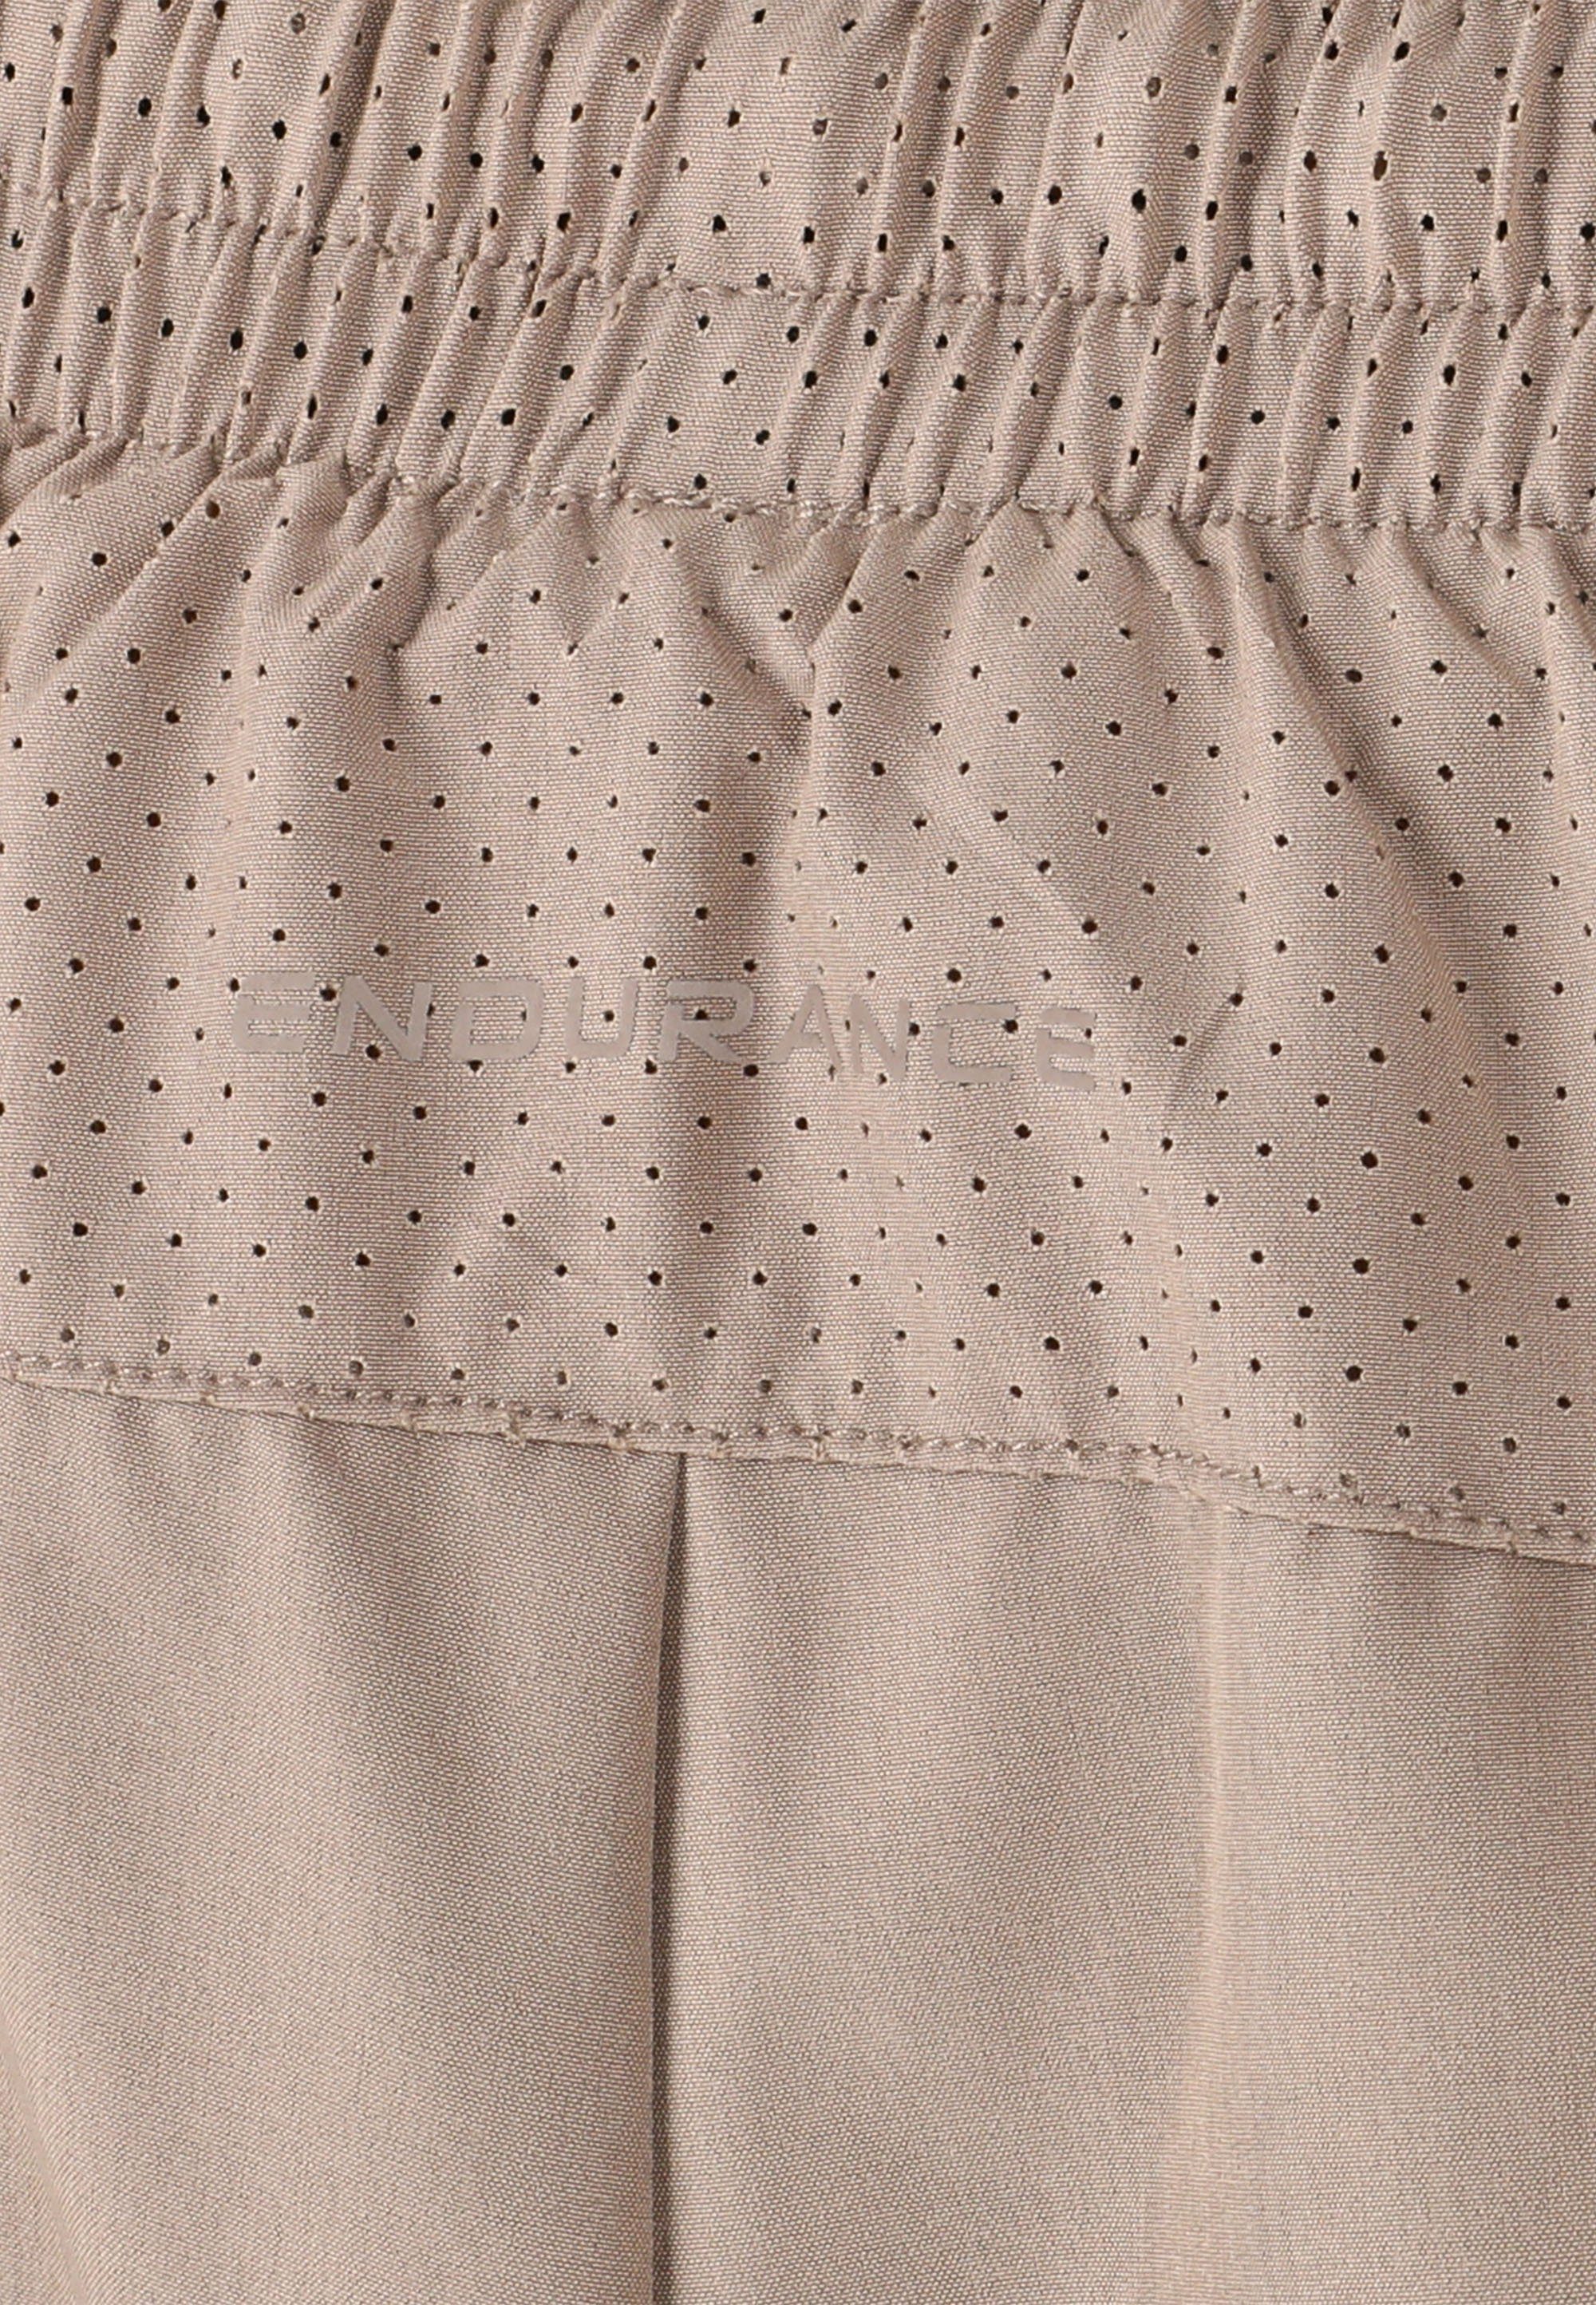 ENDURANCE Shorts praktischen Taschen beige mit Eslaire